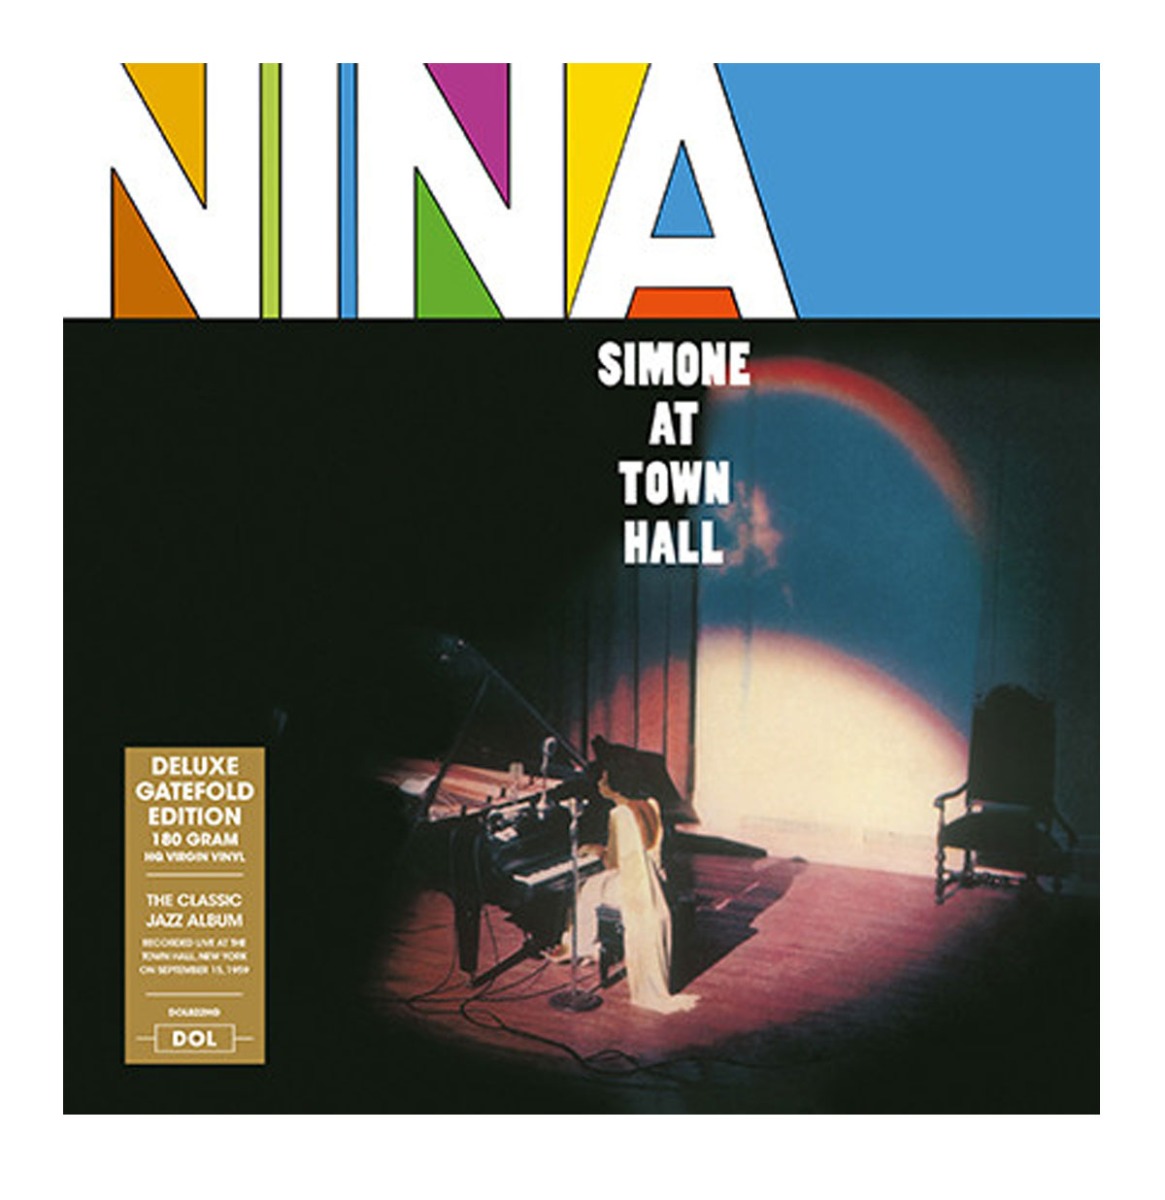 Nina Simone - Nina Simone At Town Hall LP